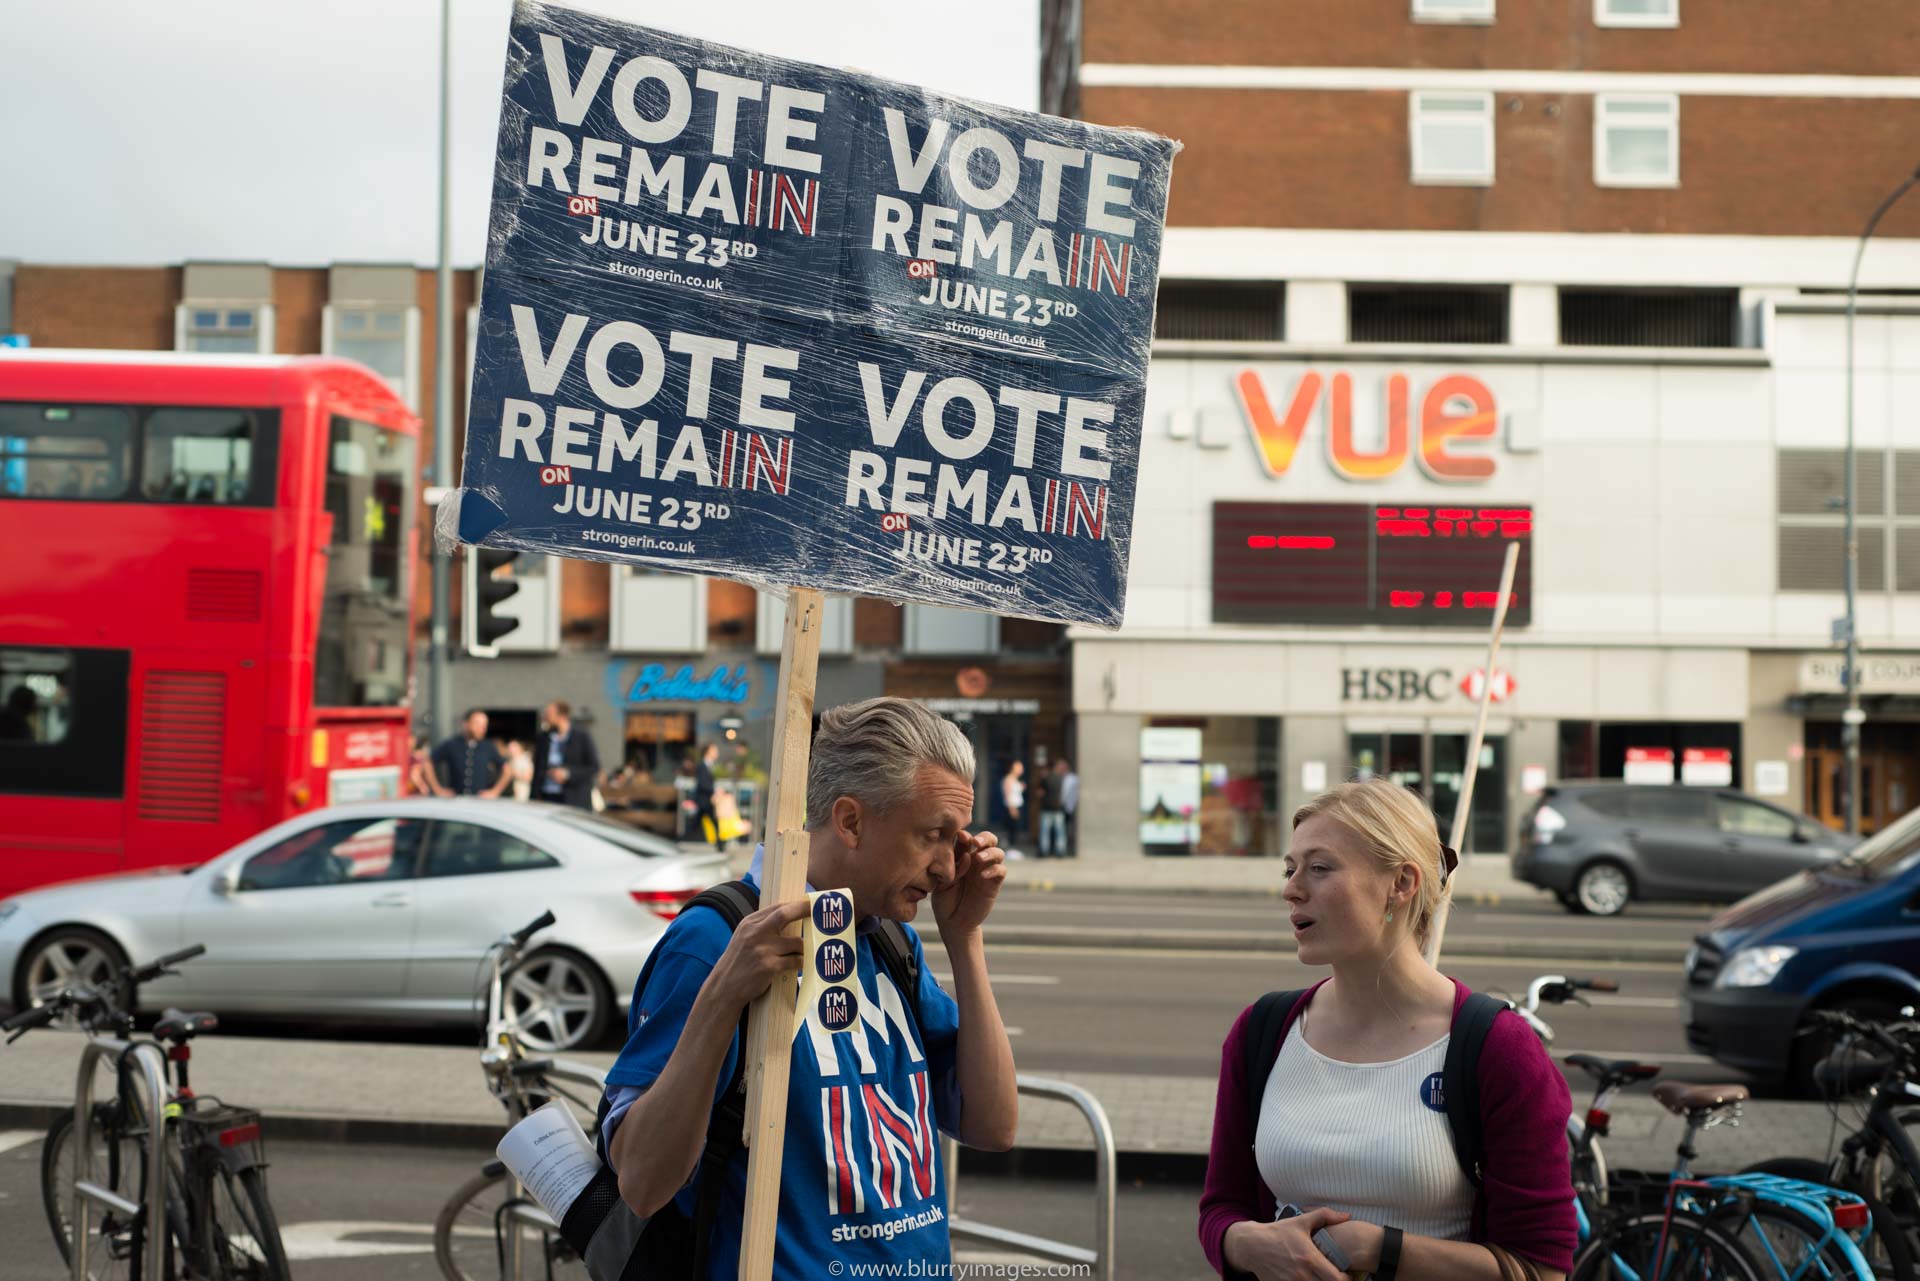 Brexit campaigners, Brexit poster, Brexit referendum